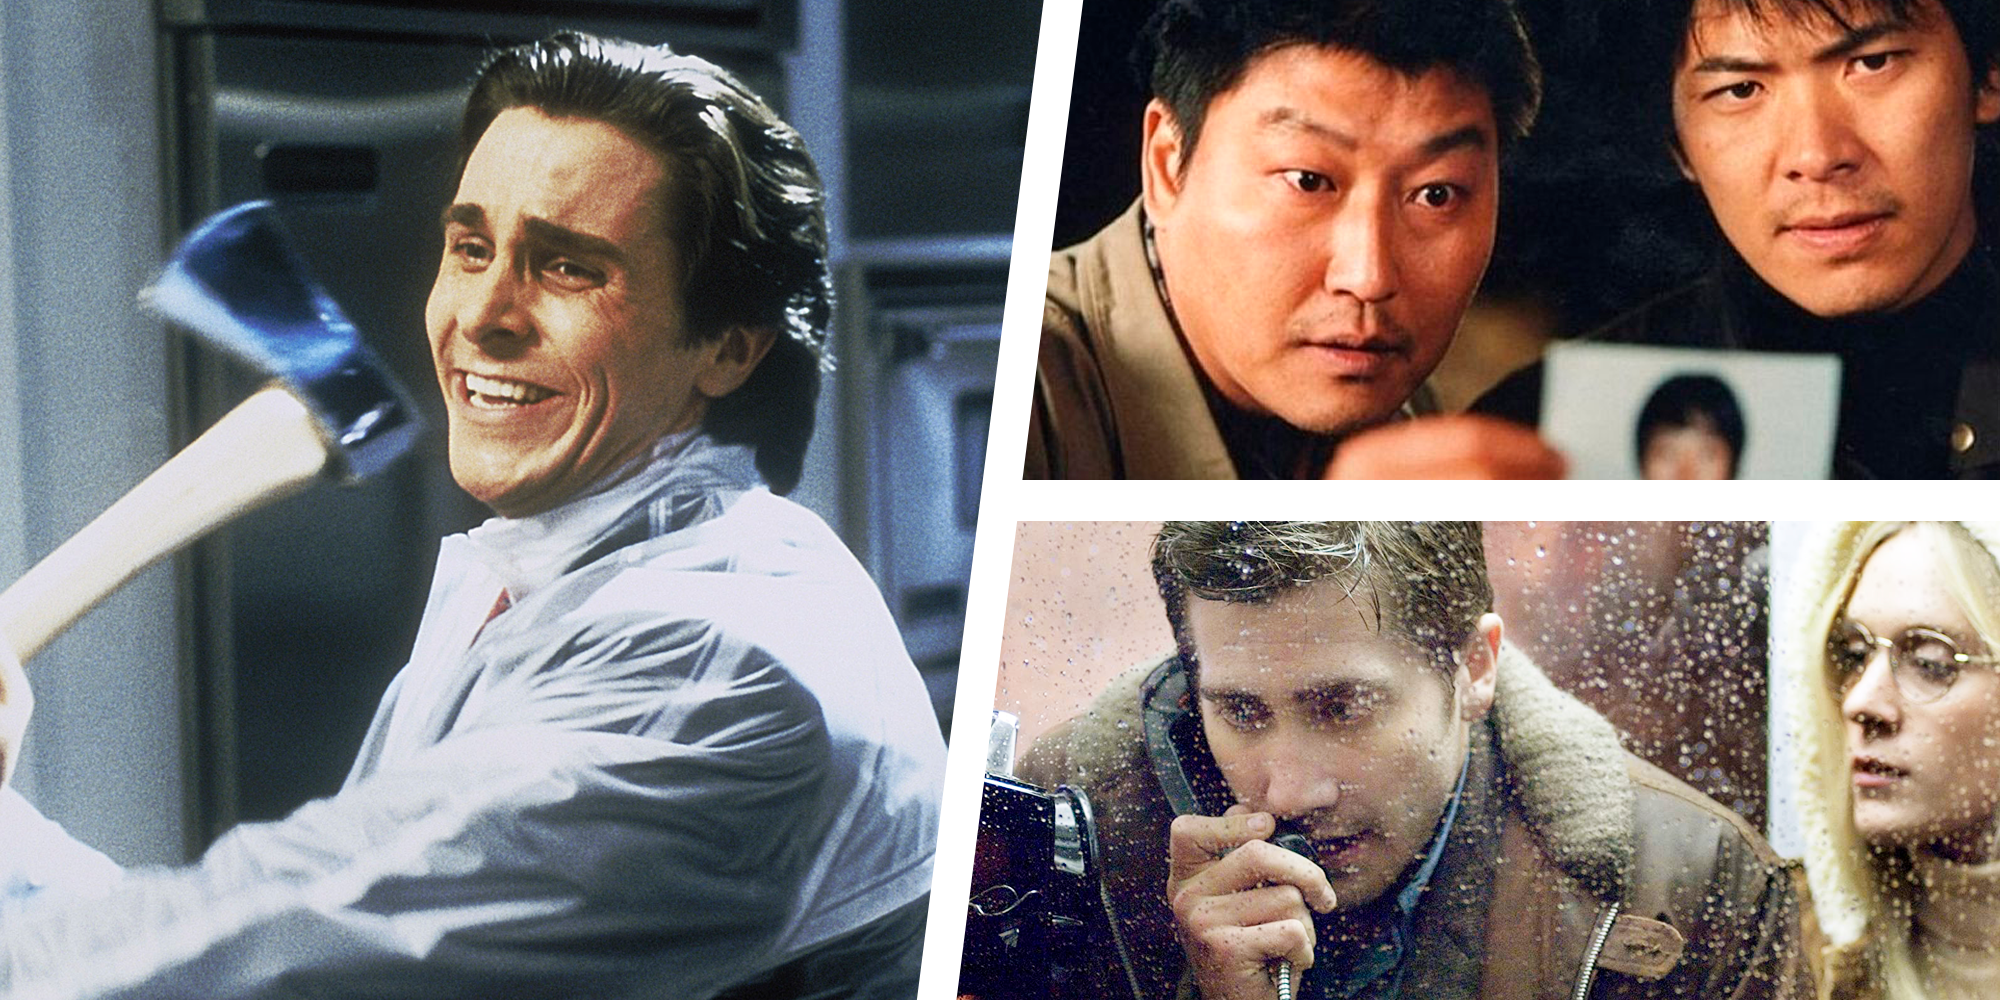 Stol rense På kanten The 30 Best Serial Killer Movies of All Time - Best Serial Killer Movies